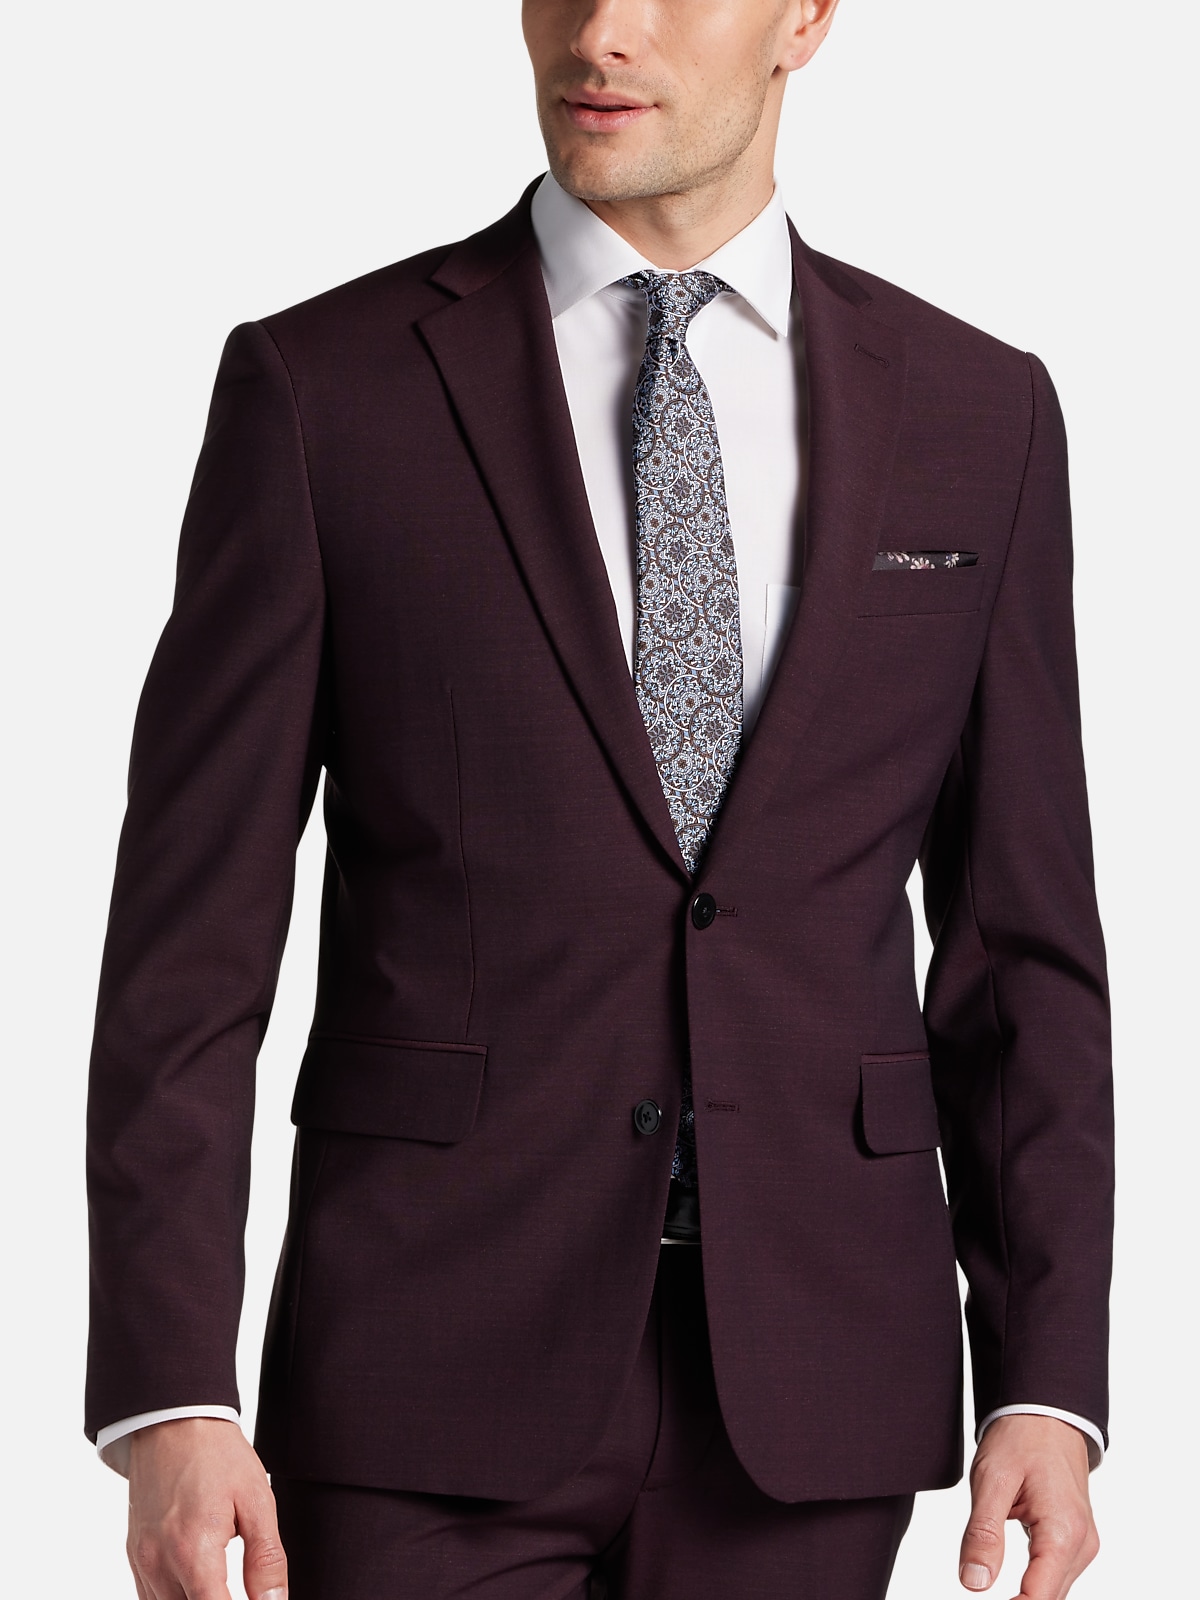 JOE Joseph Abboud Skinny Fit Suit Separates Jacket | New Arrivals| Men ...